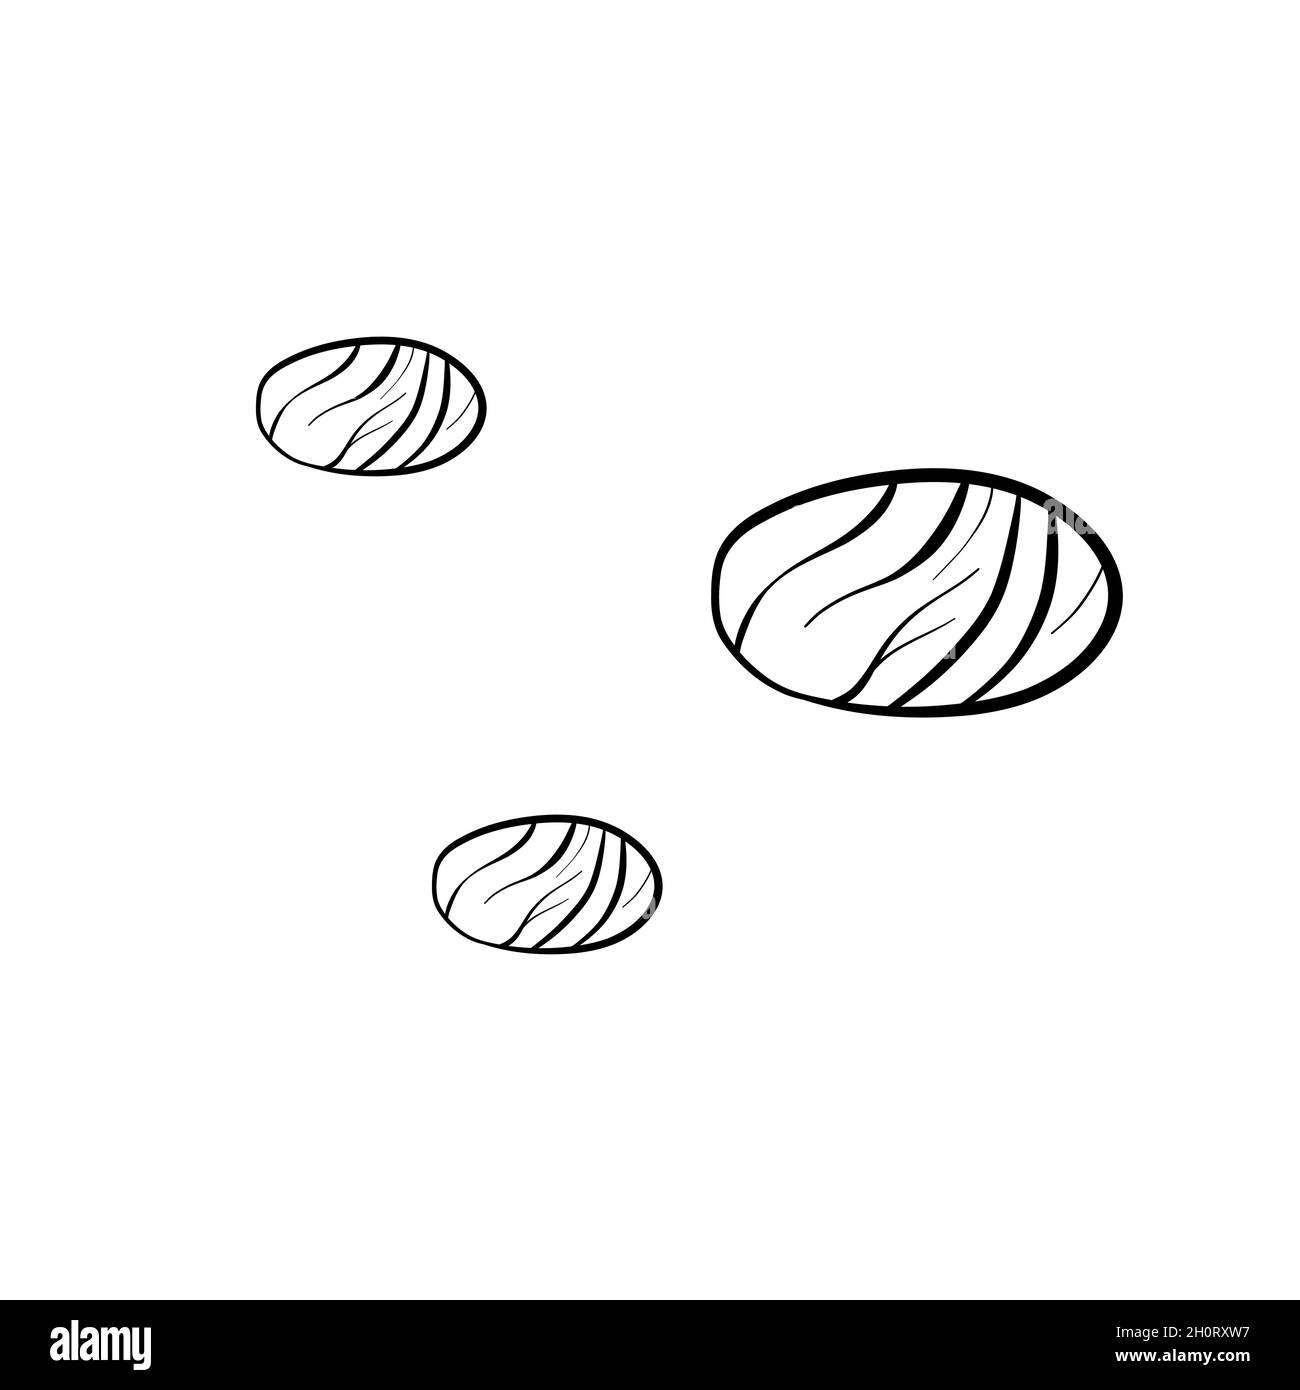 Illustrazione vettoriale di pietre di mare del doodle disegnate a mano Illustrazione Vettoriale